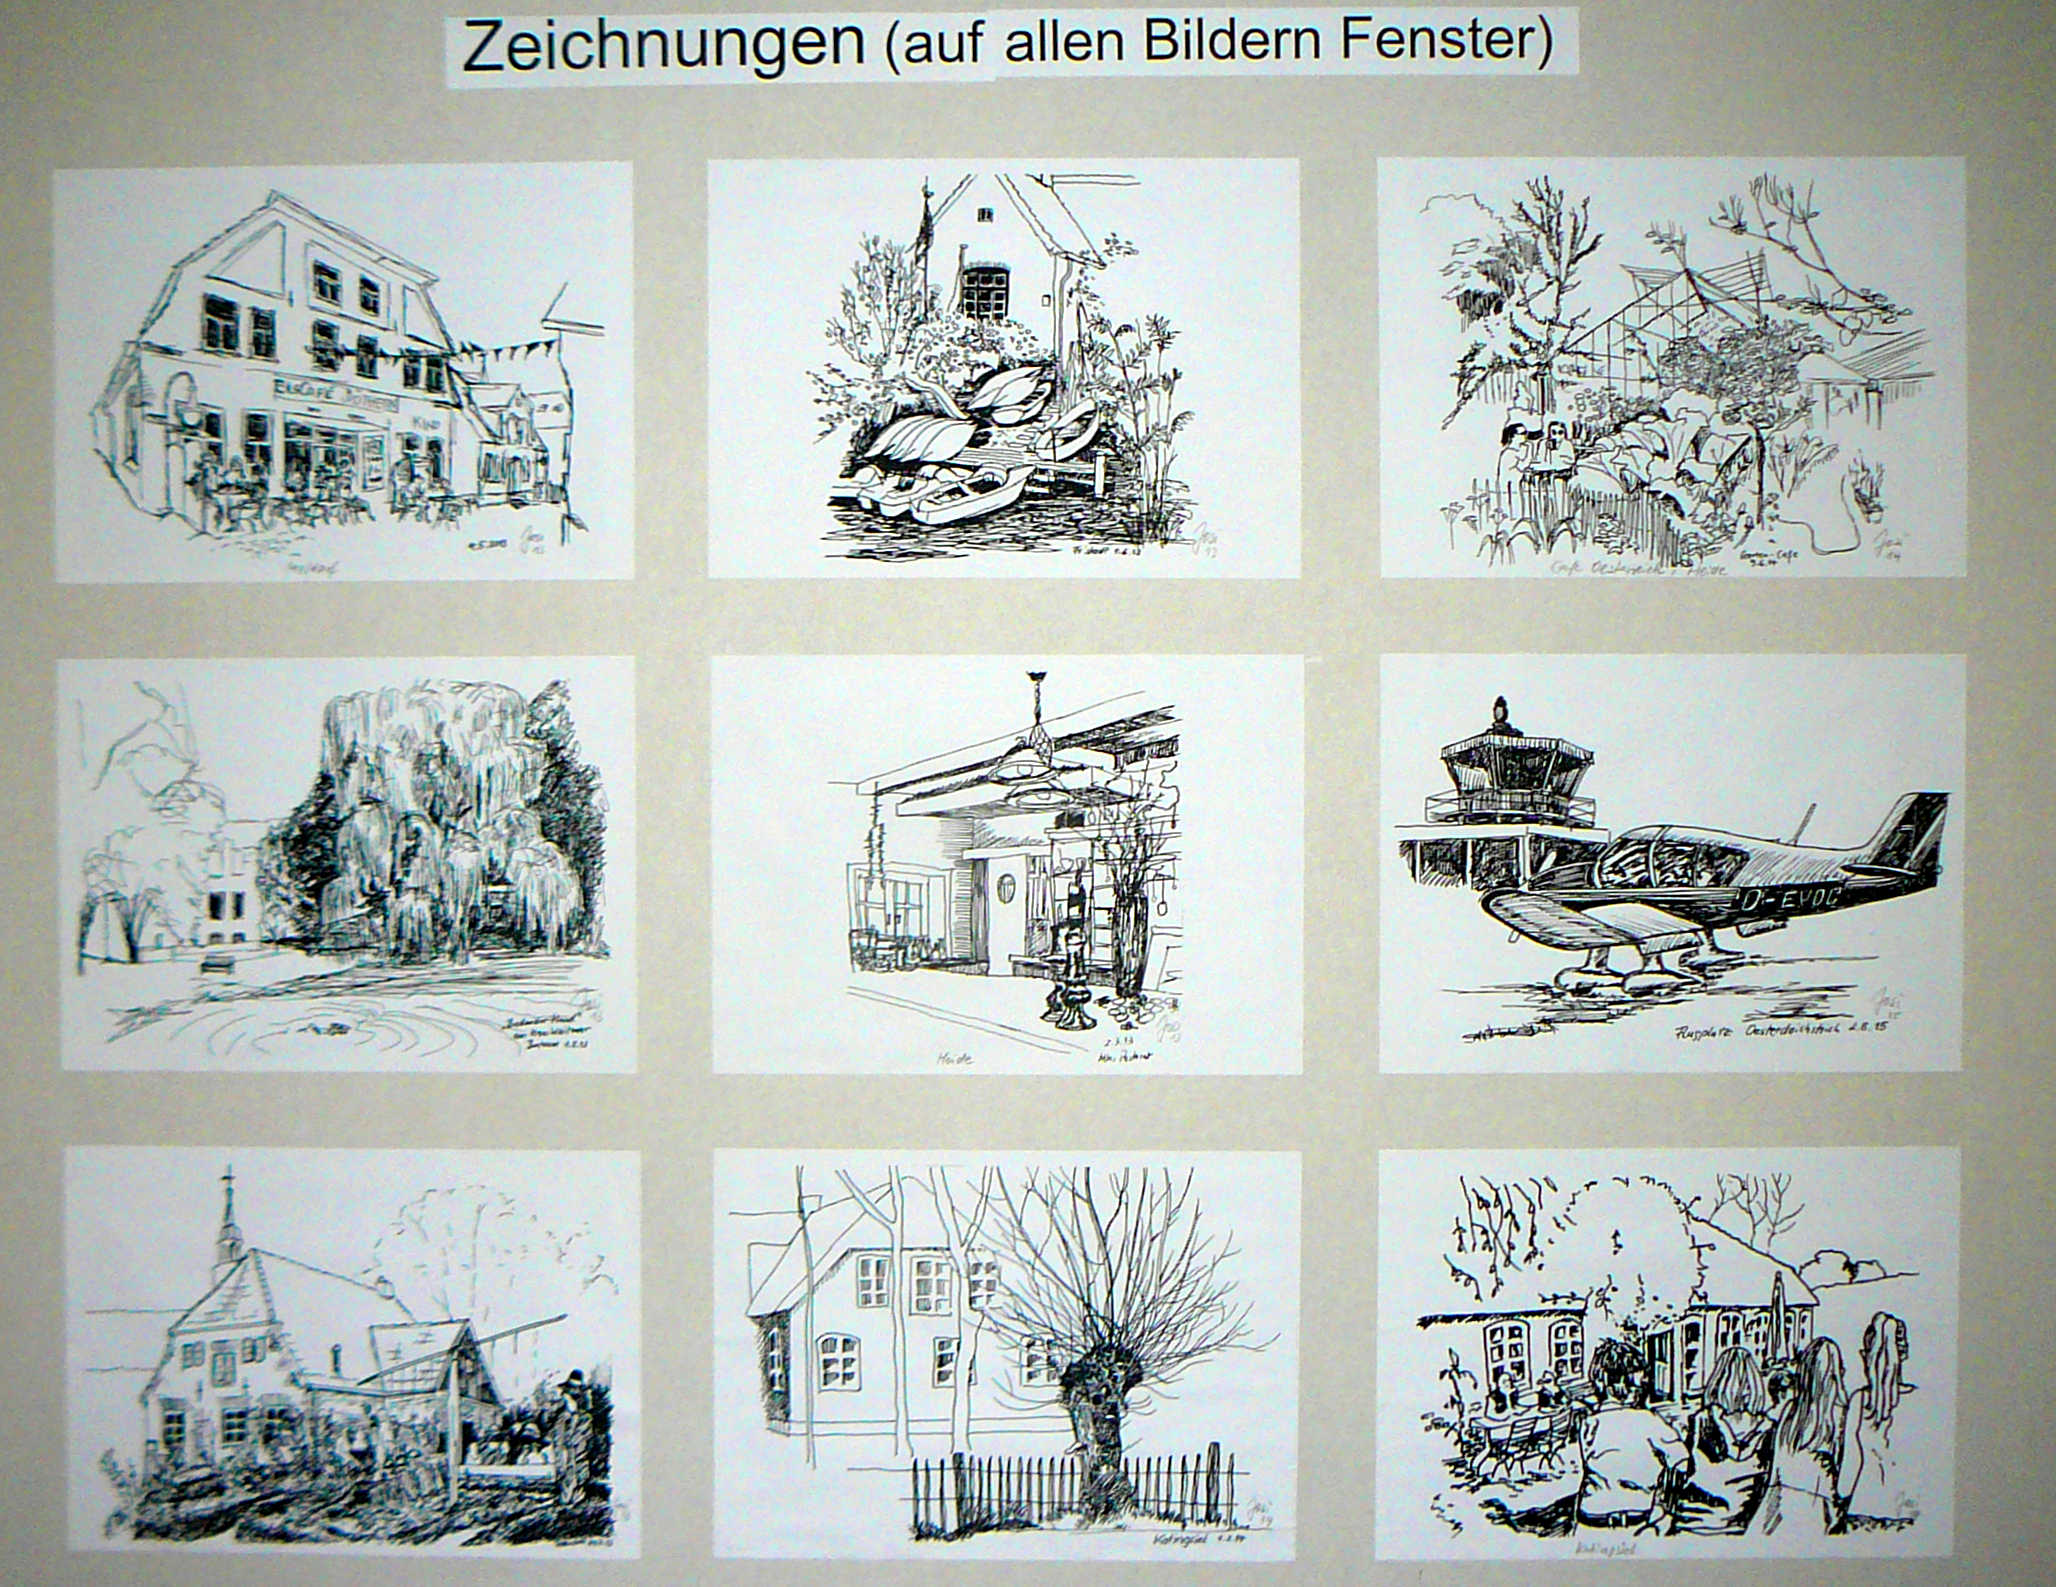 "Zeichnungen" ©2013 bis 2015 Josi Bennöhr